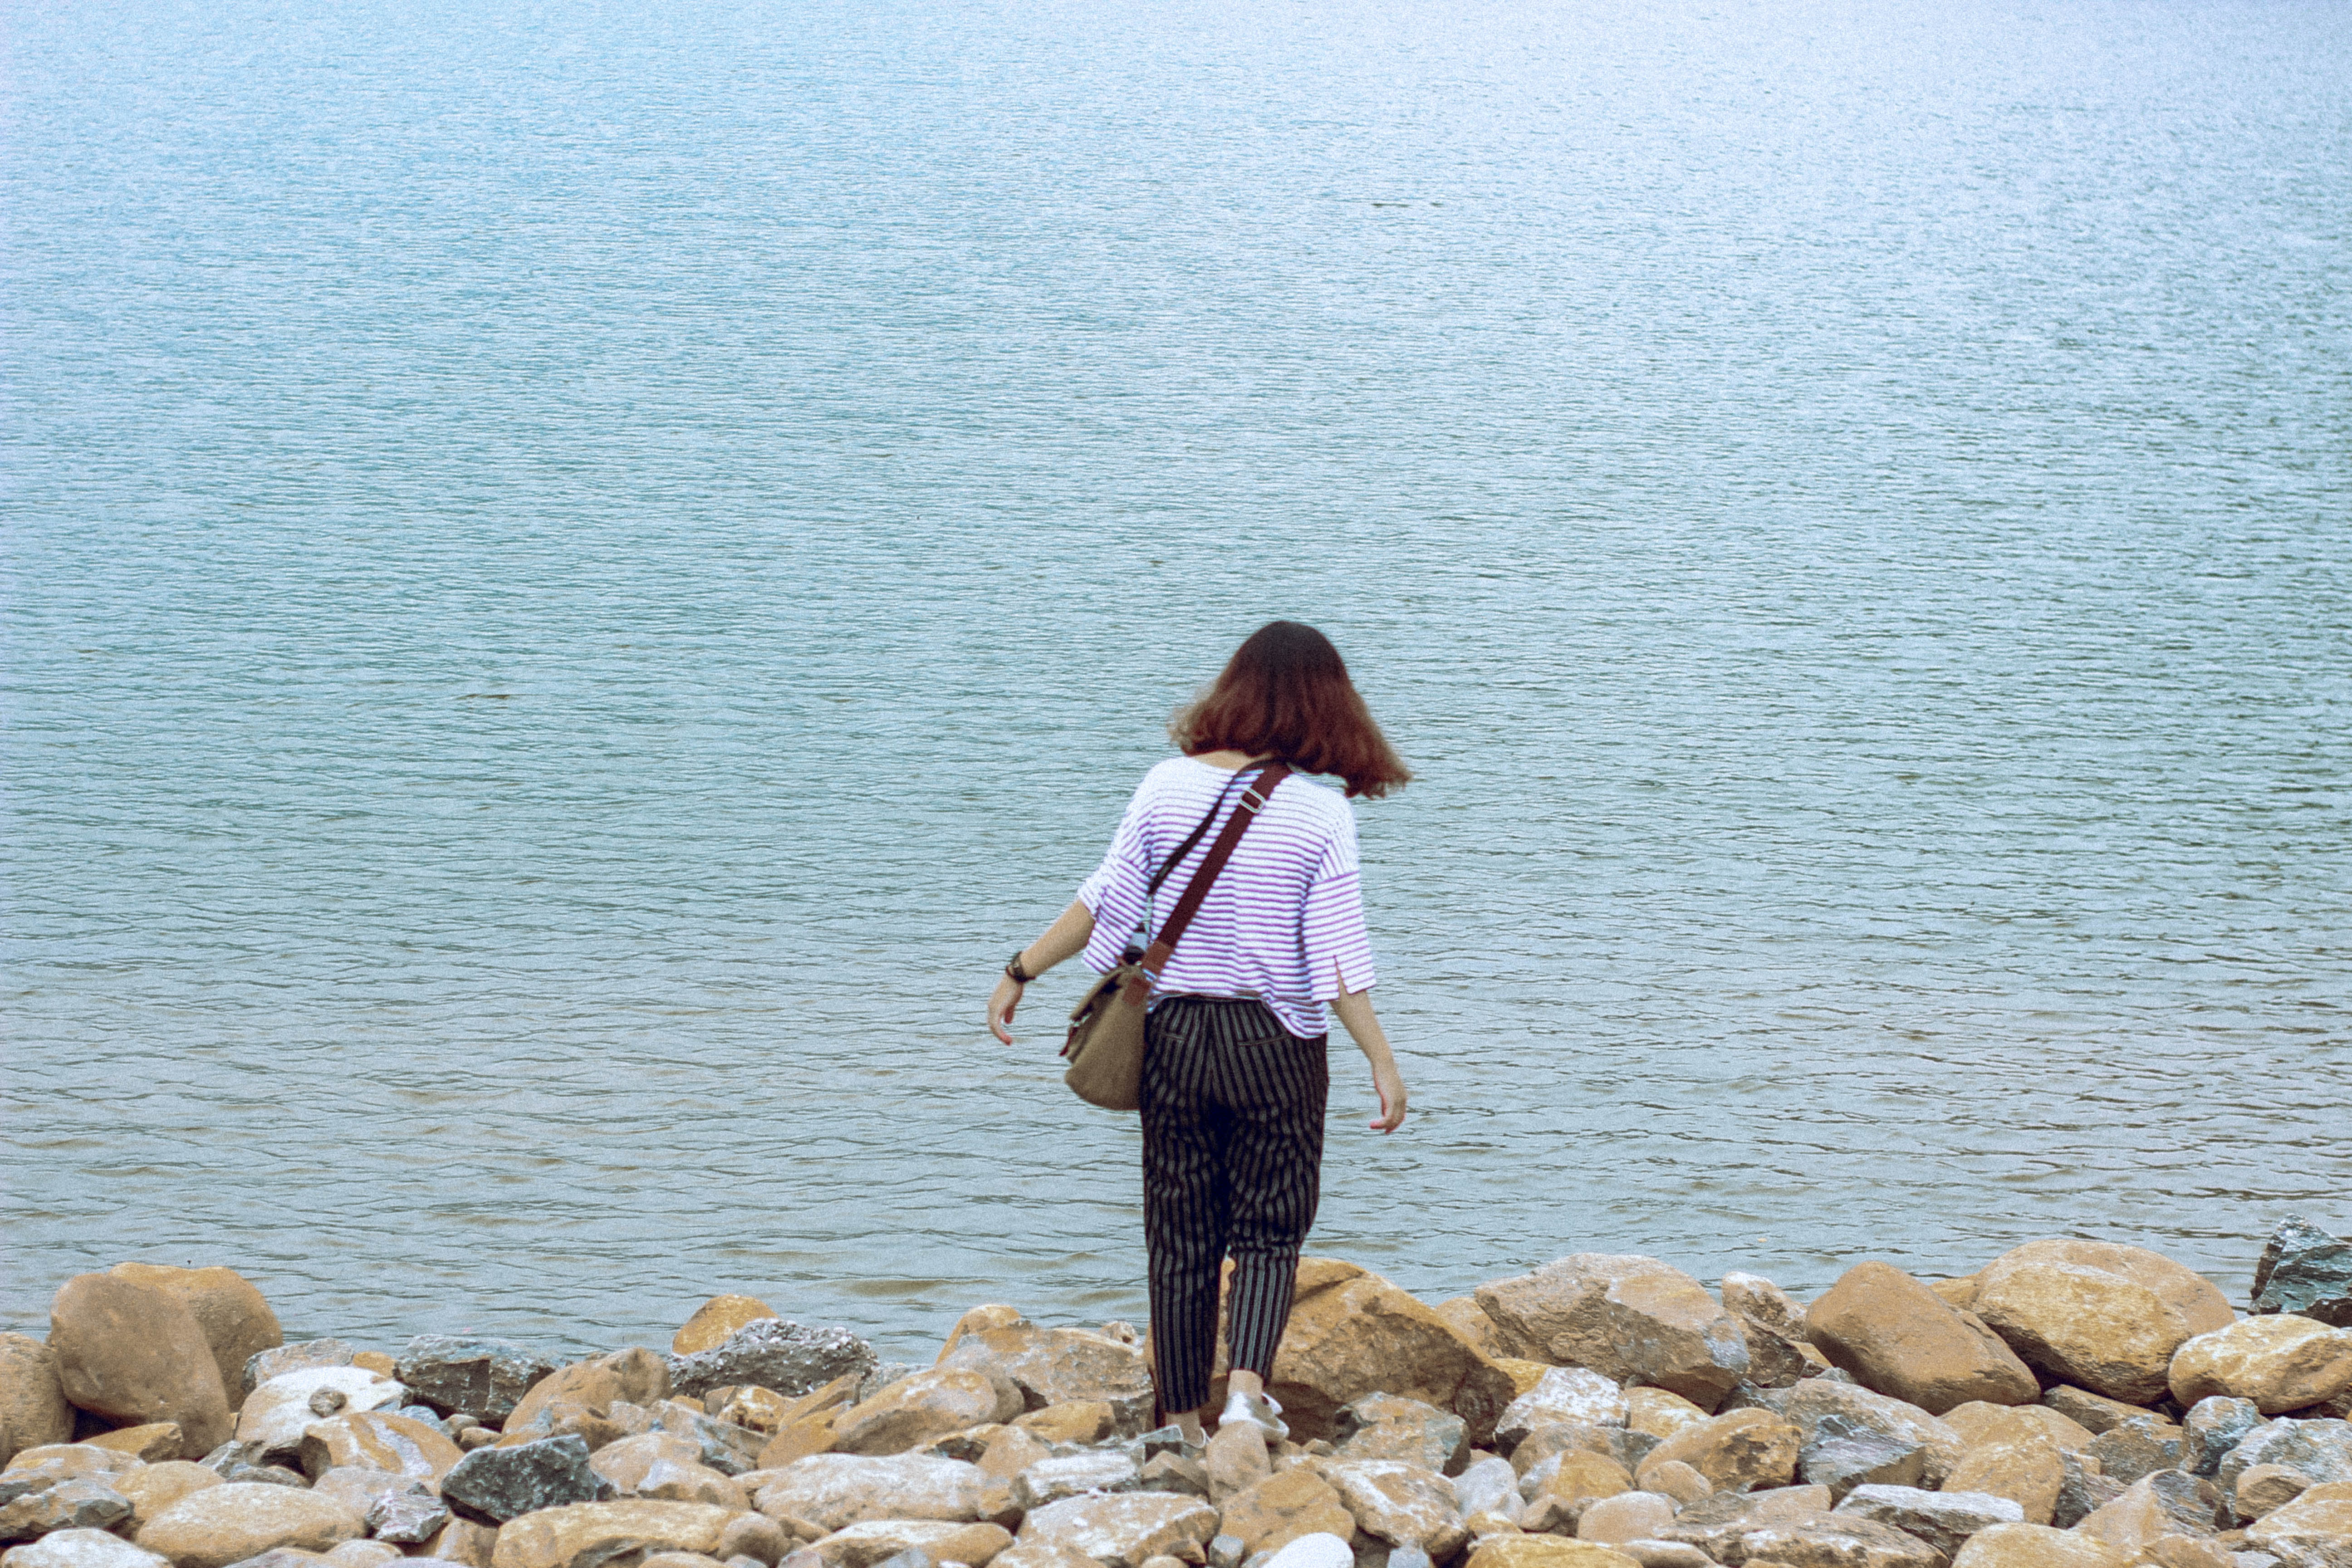 Hồ Xạ Hương là chốn nghỉ chân bình yên dịp cuối tuần cho bạn sau những bộn bề của cuộc sống